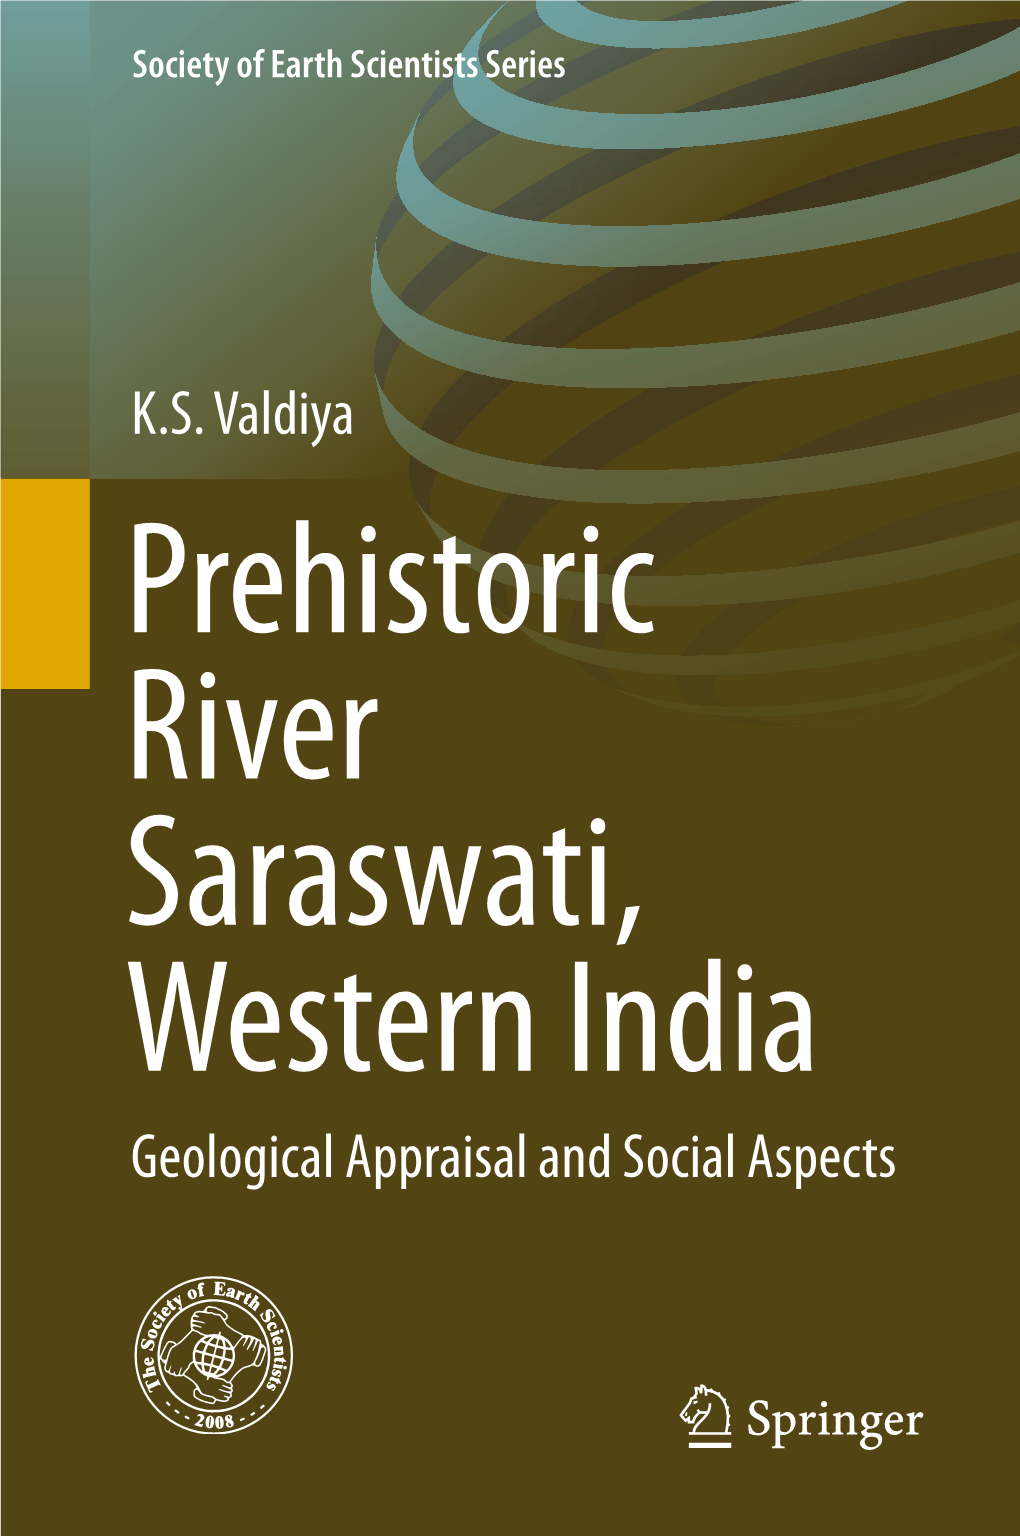 K.S. Valdiya Geological Appraisal and Social Aspects